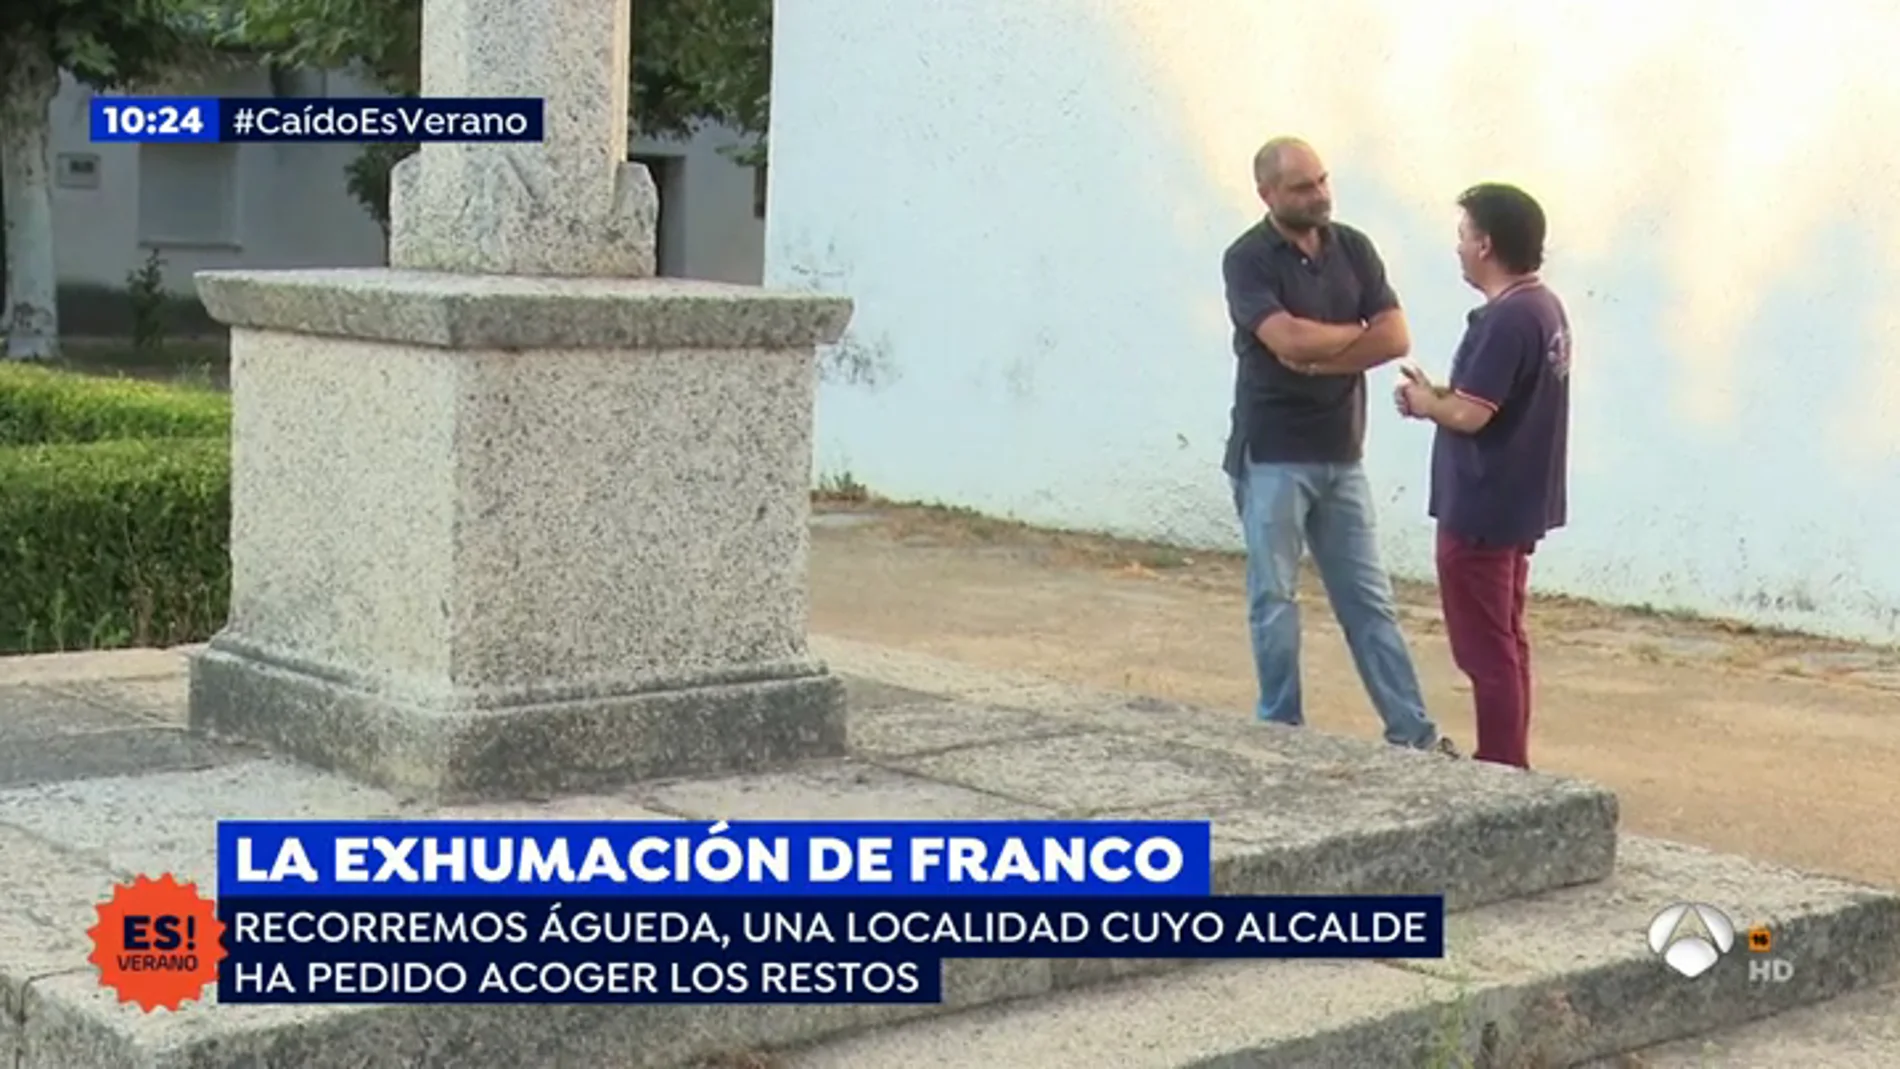 Enfrentamiento entre los vecinos del pueblo que quiere acoger a Franco: "No queremos que lo traigan, se liaría mucho alboroto"